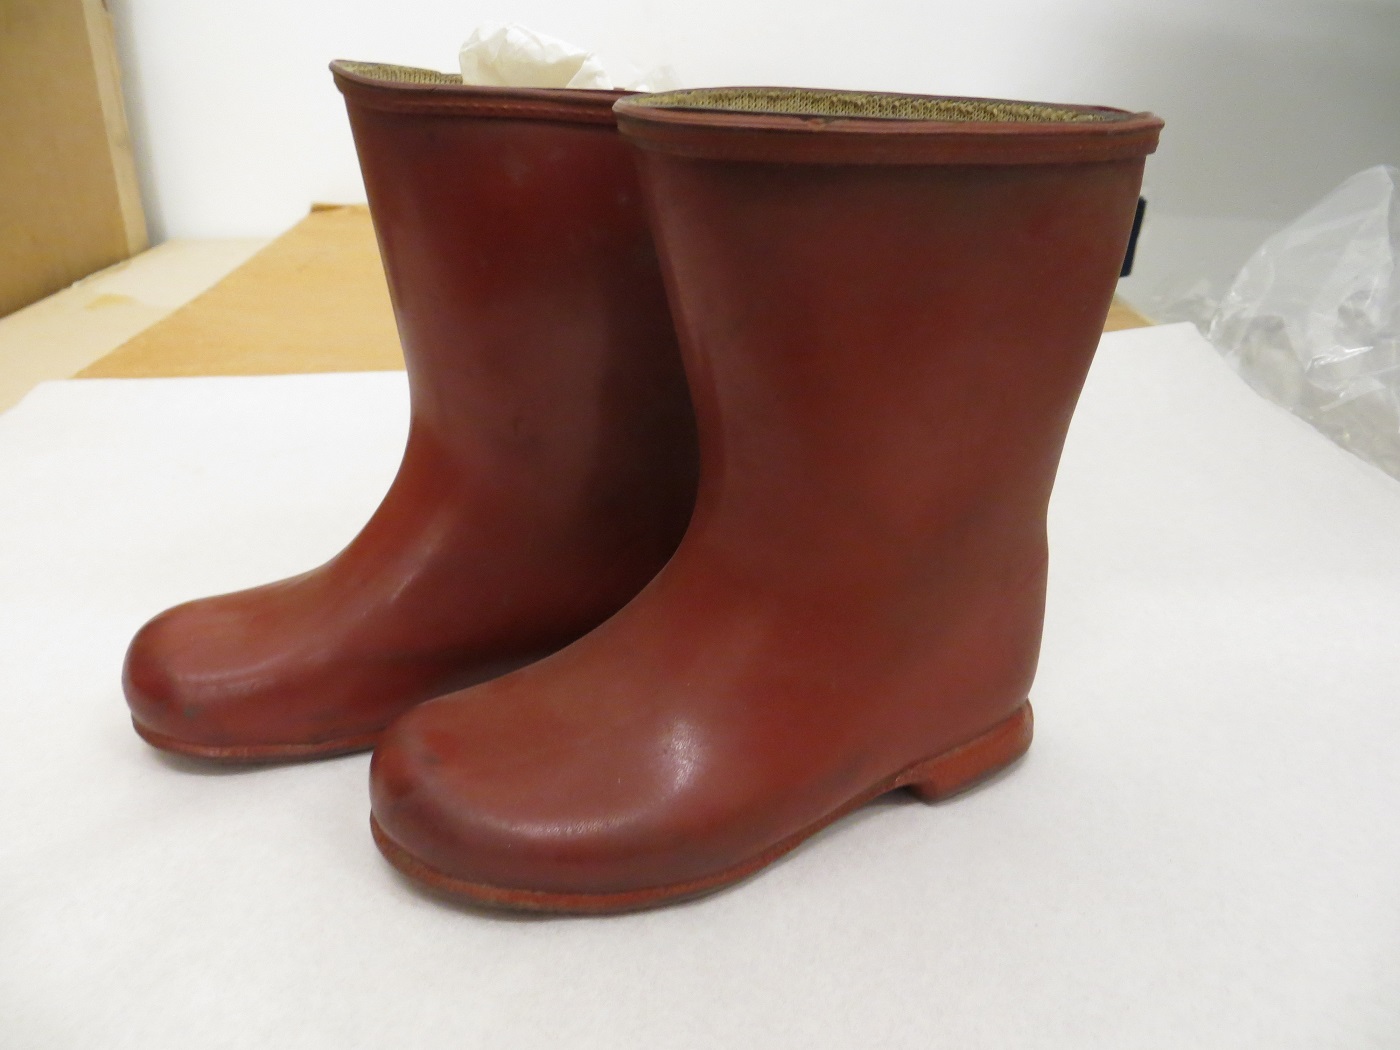 misc.215:1 - 1988;红色的橡胶惠灵顿靴子;邓洛普,ca。1959。博物馆举行的童年©维多利亚和艾伯特博物馆,伦敦